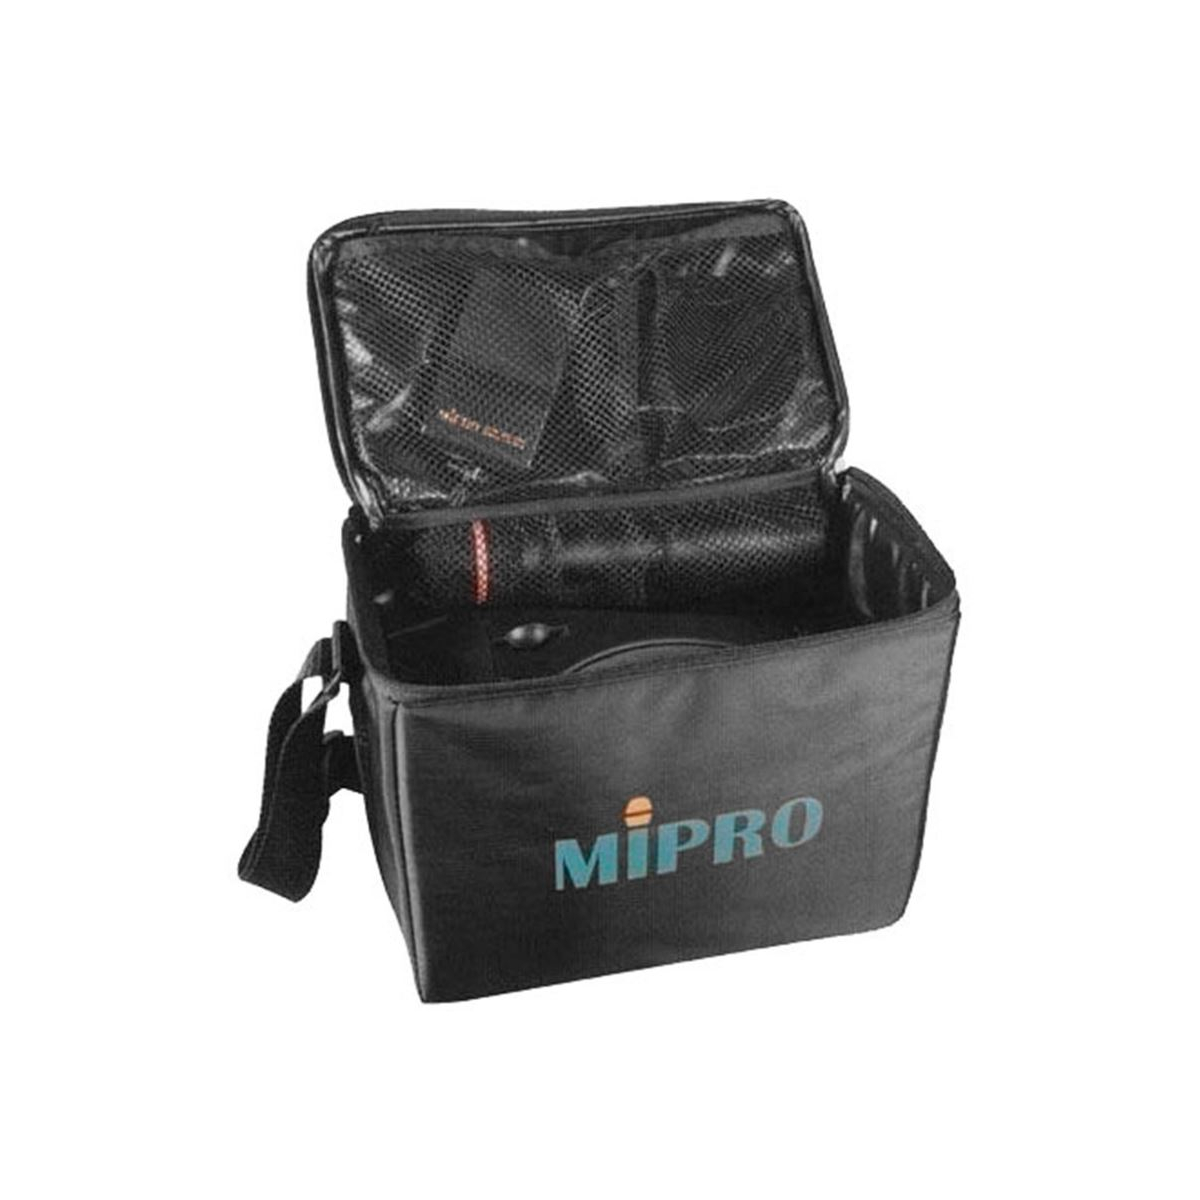 Housses sonos portables - Mipro - SC 200